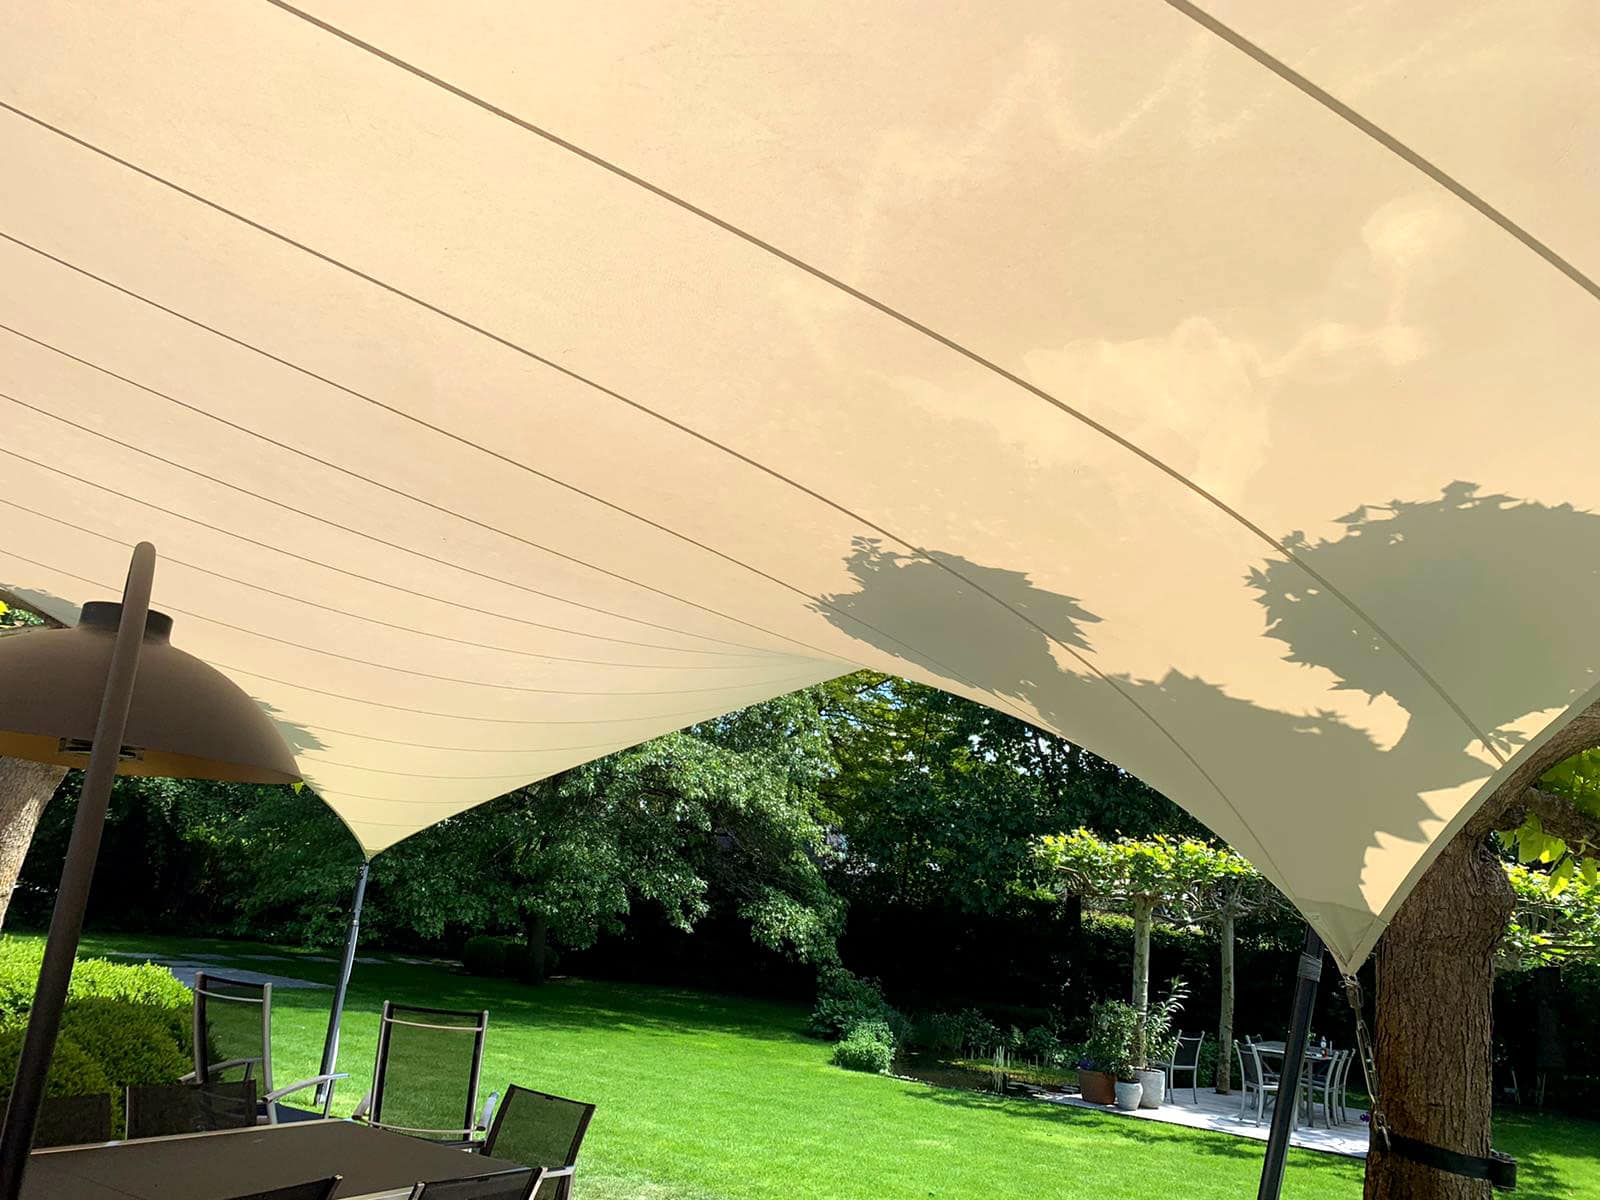 3D ontworpen terrasoverkapping van zeildoek